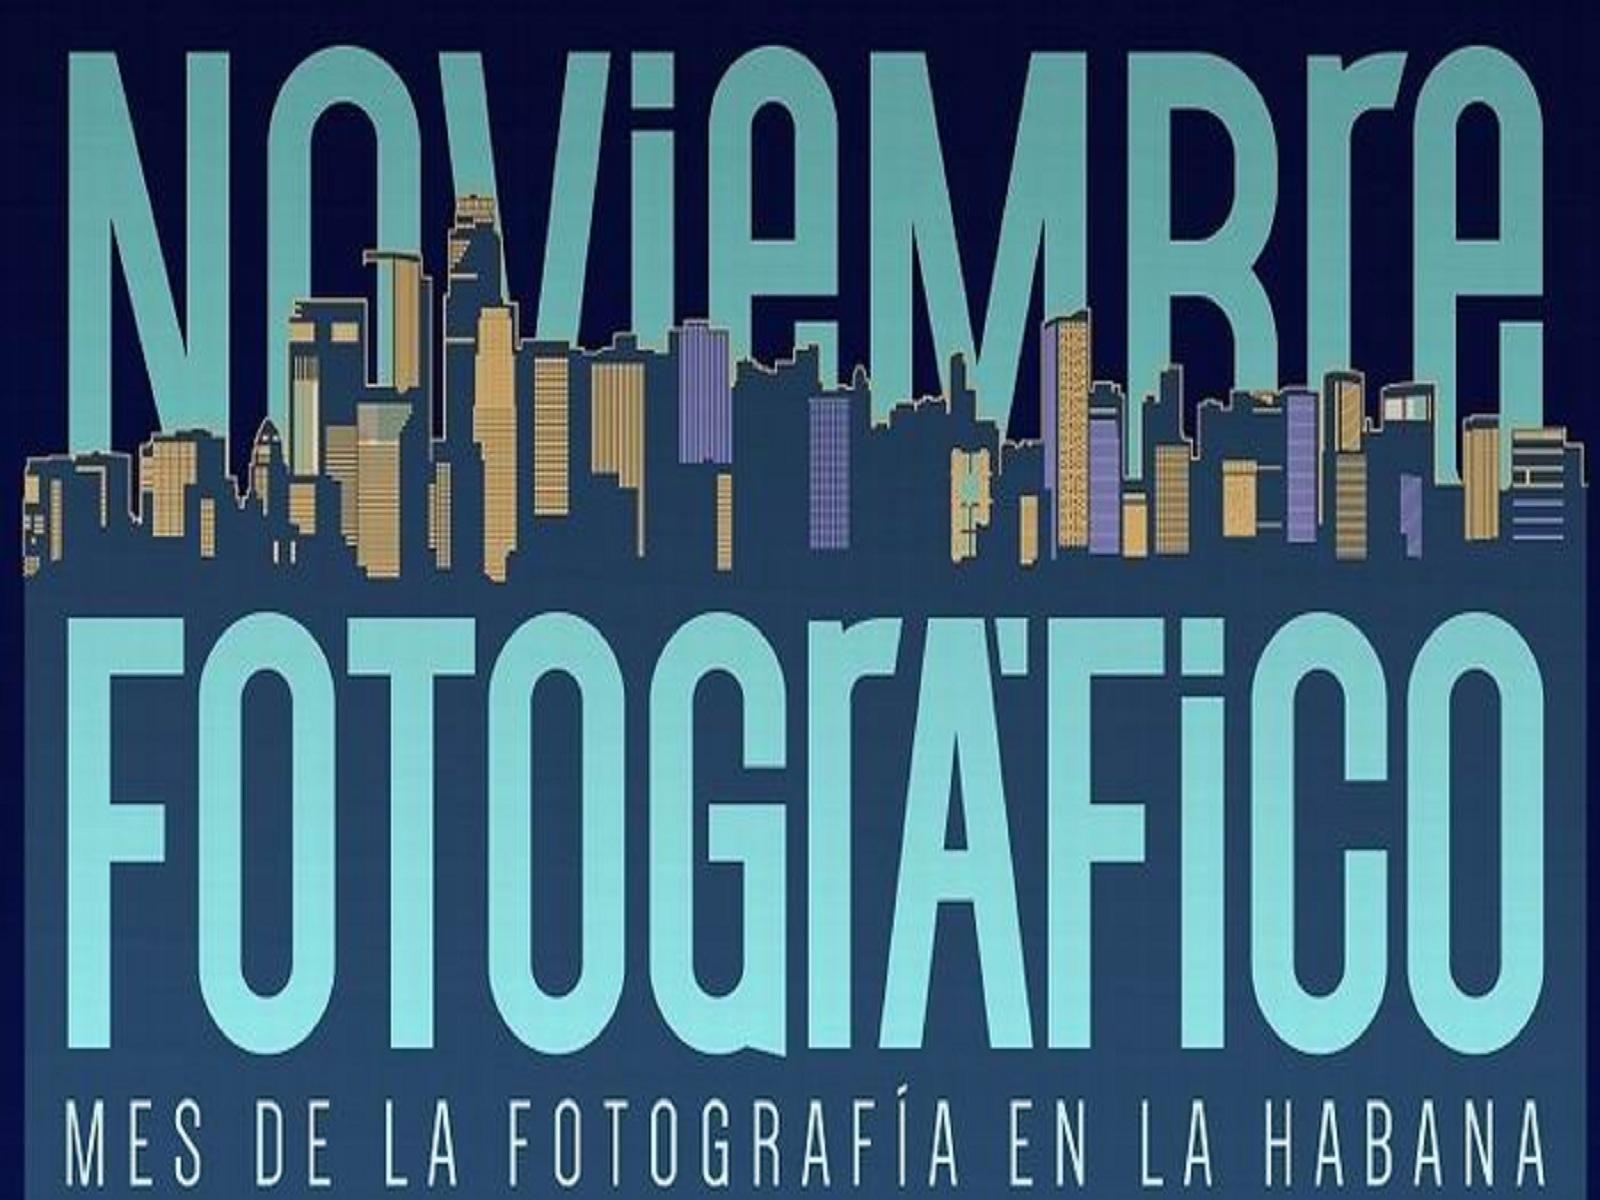 Noviembre Fotográfico abre sus puertas en la Fototeca de Cuba